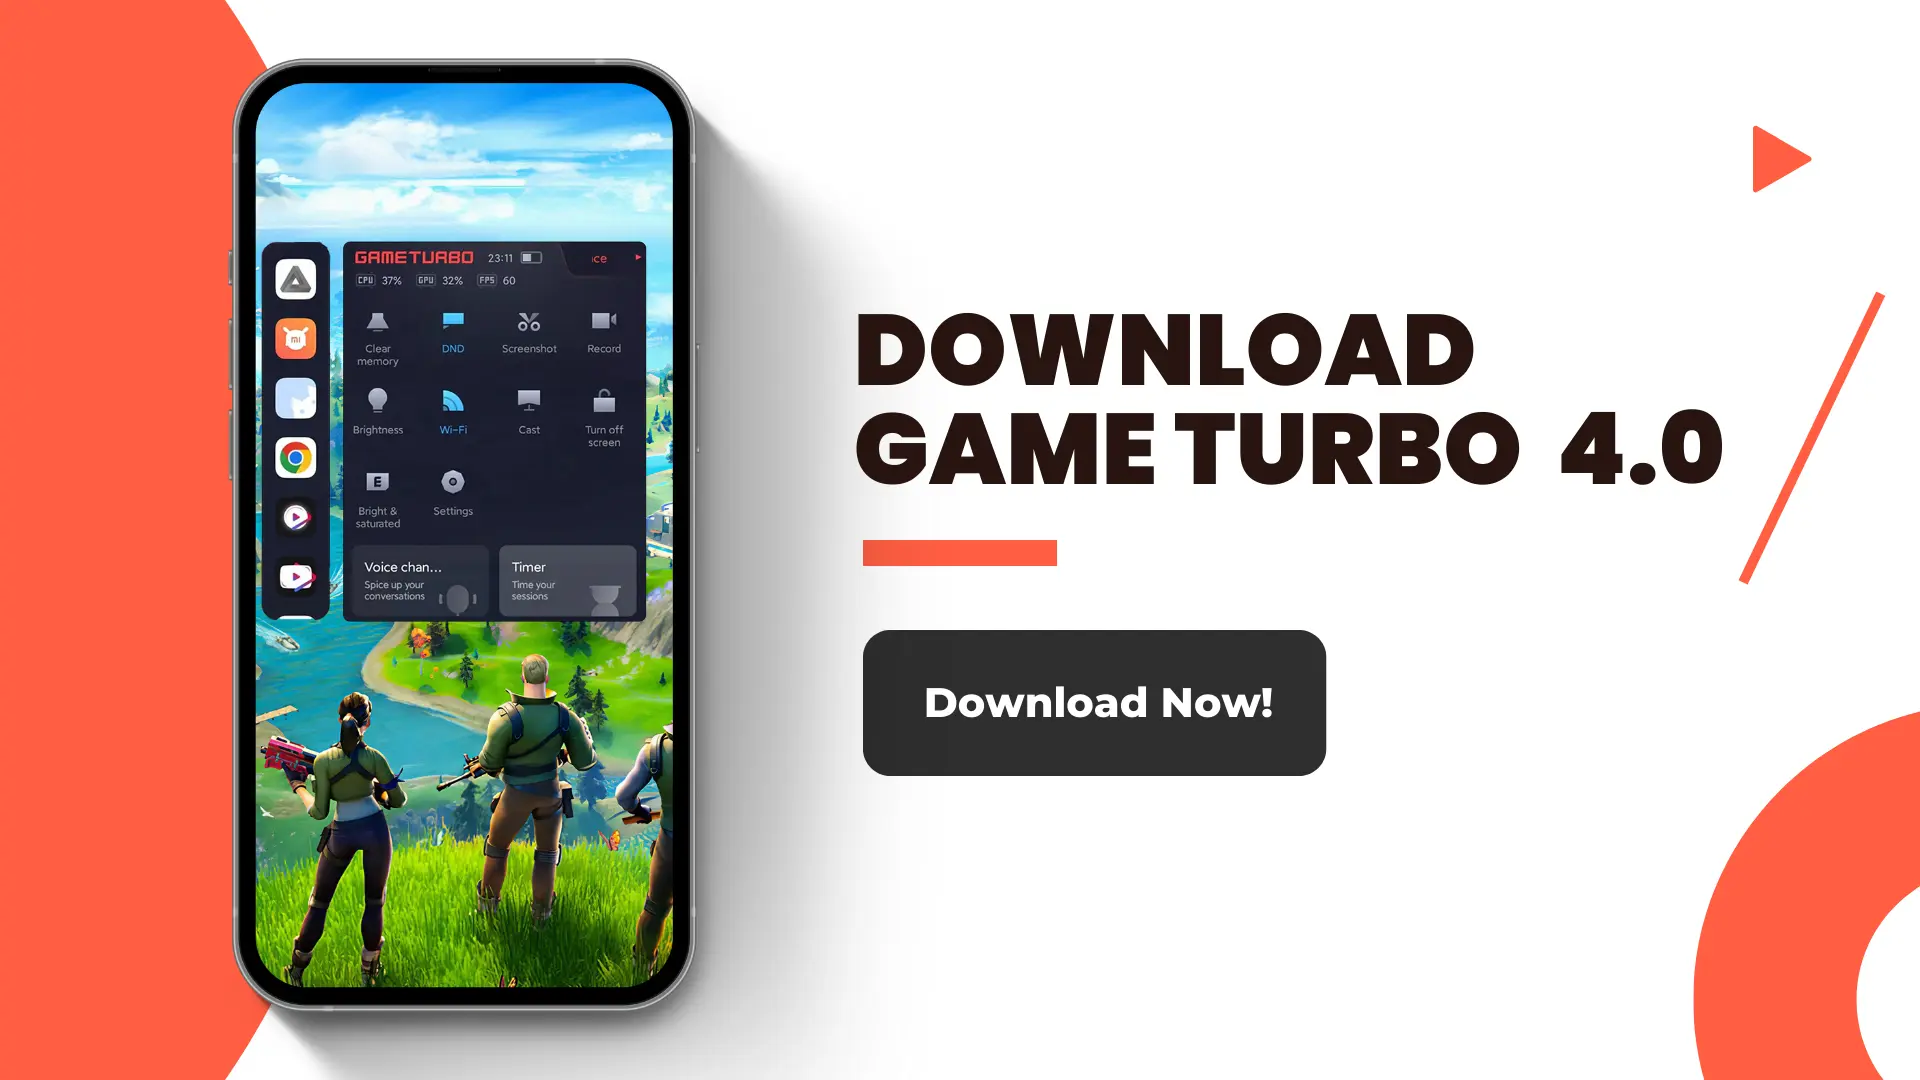 Download Game Turbo Versi Terbaru